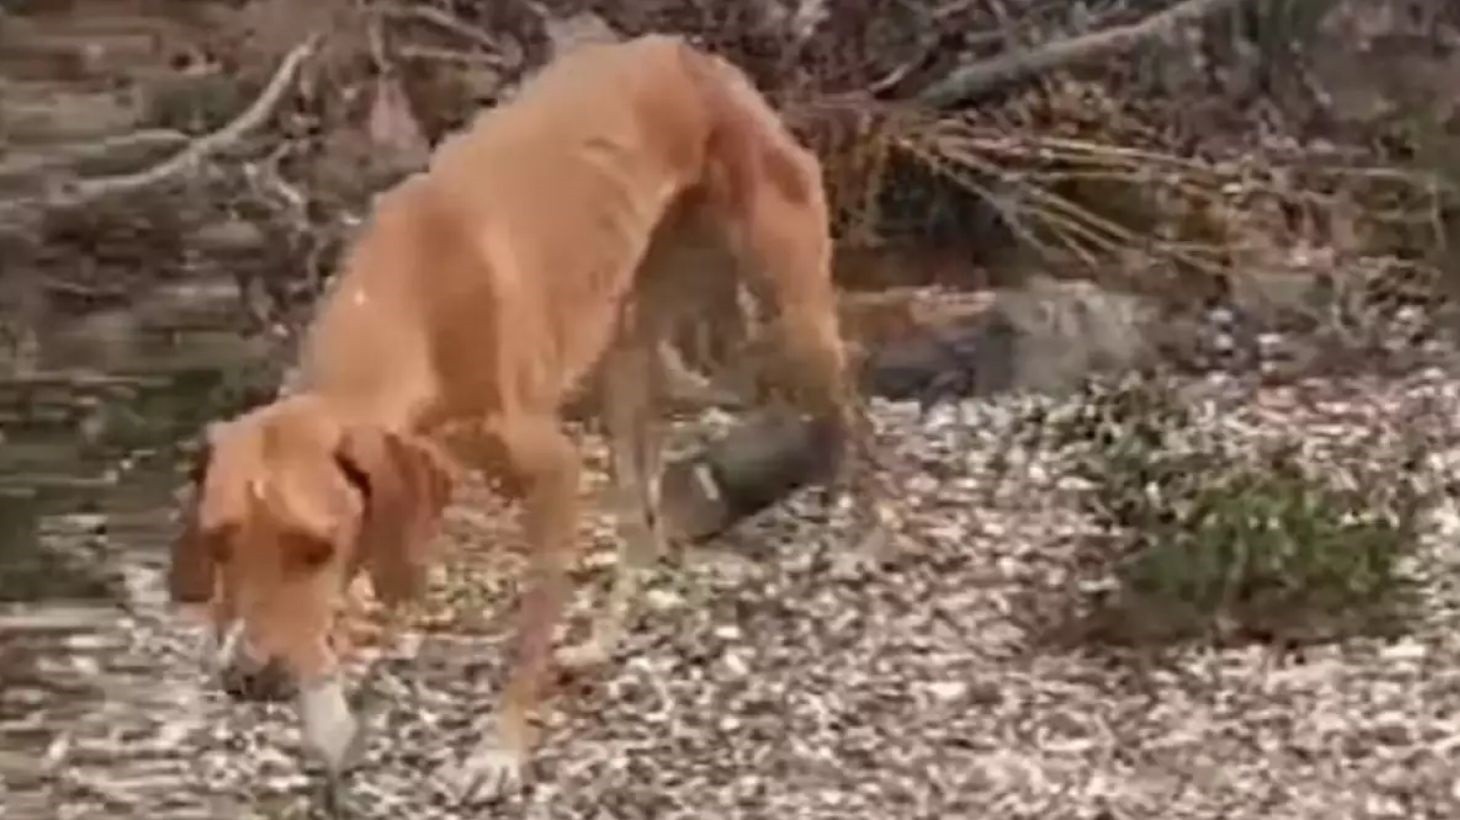 Κακοποίηση ζώου στη Χαλκιδική: Έδεσαν σύρμα στην κοιλιά σκύλου για να σέρνει τενεκεδάκι